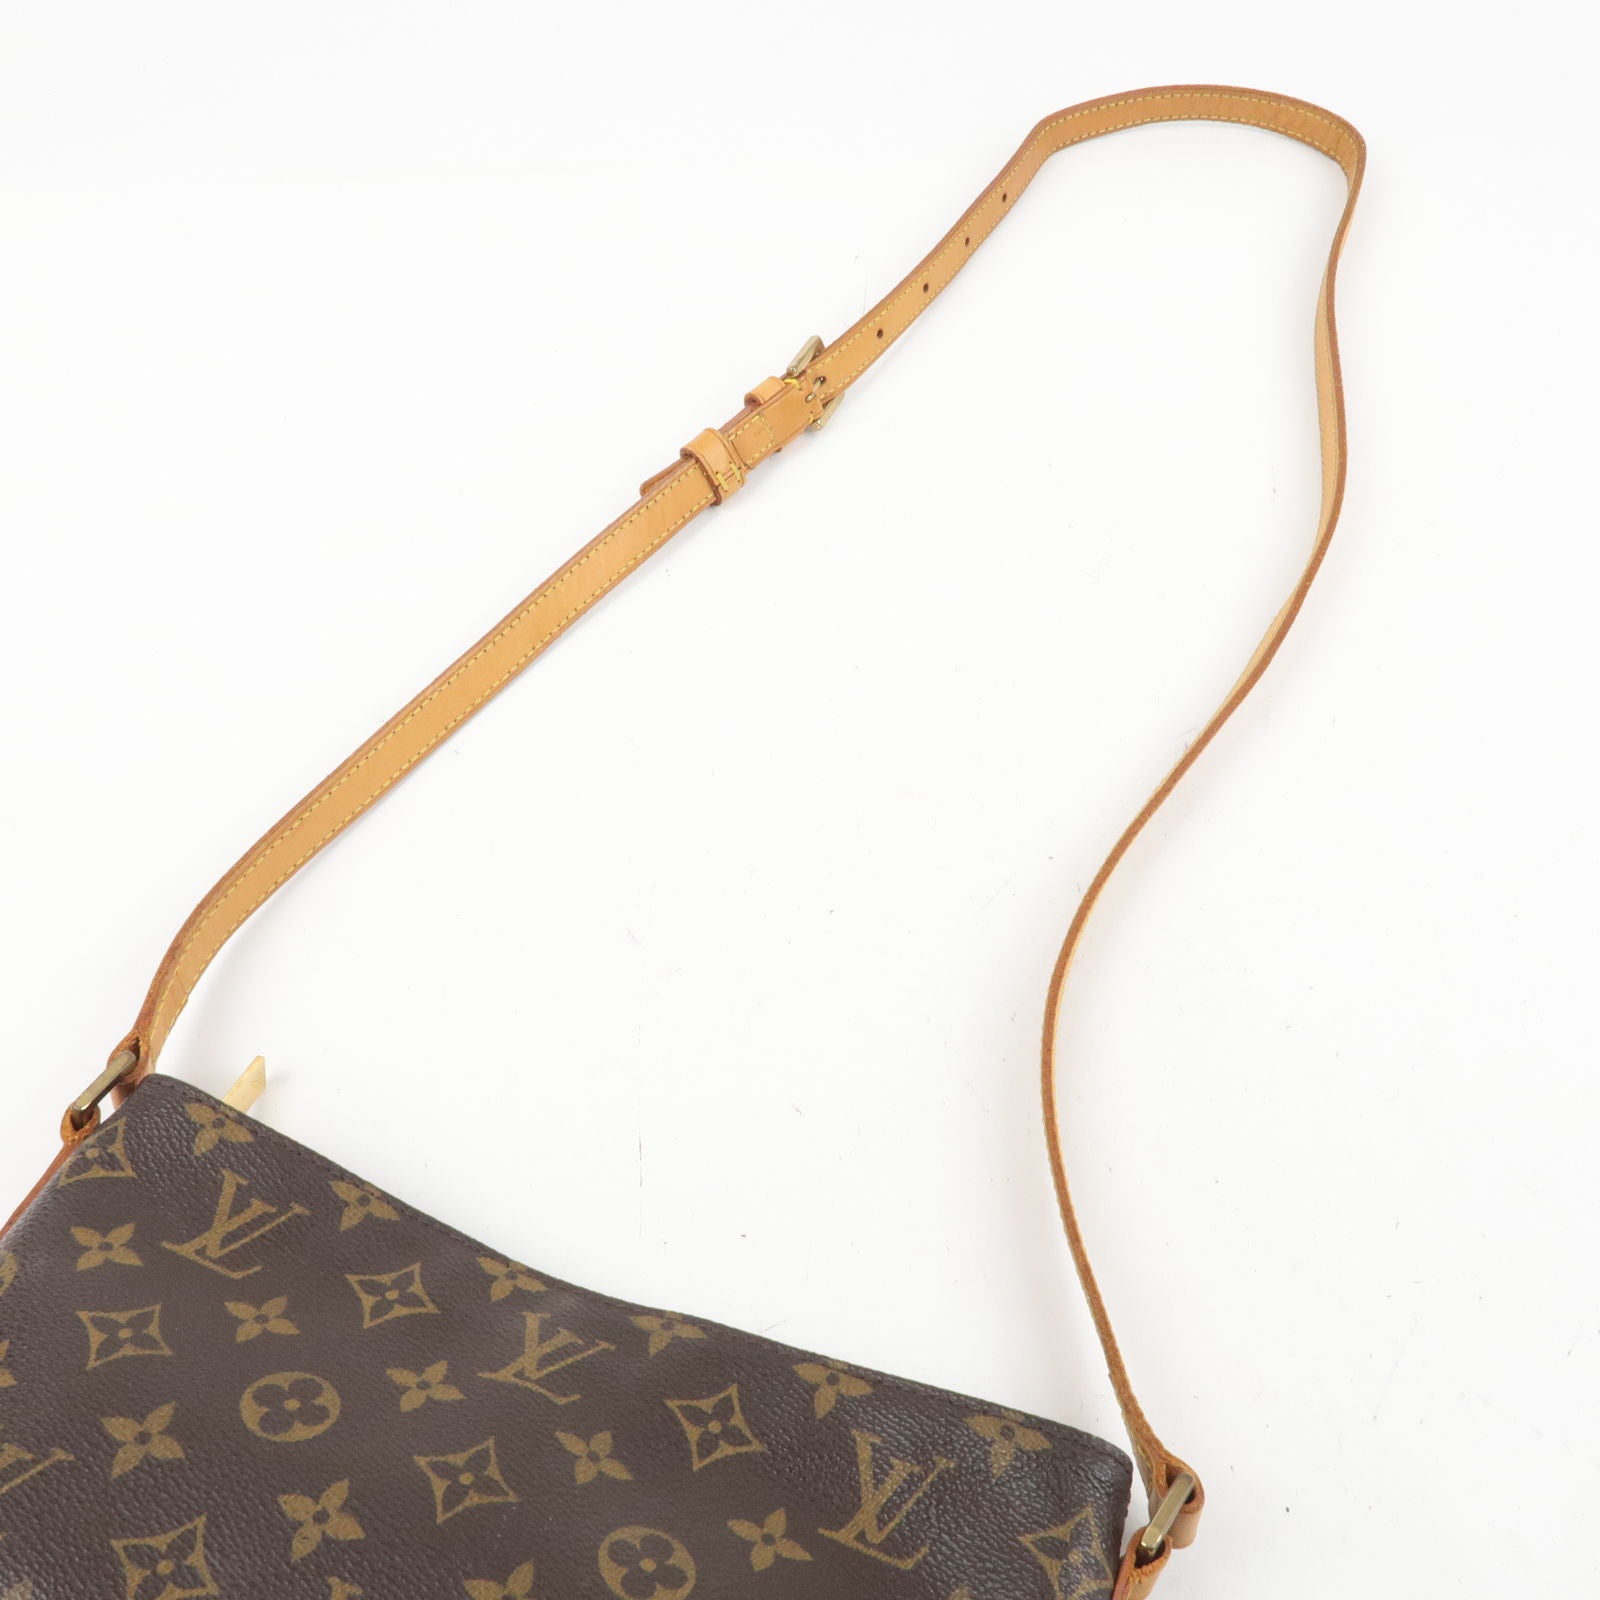 Trotteur - Louis - Bag - Vuitton - M51240 – dct - Monogram - Louis vuitton  продам шарфик шелковый - Shoulder - ep_vintage luxury Store